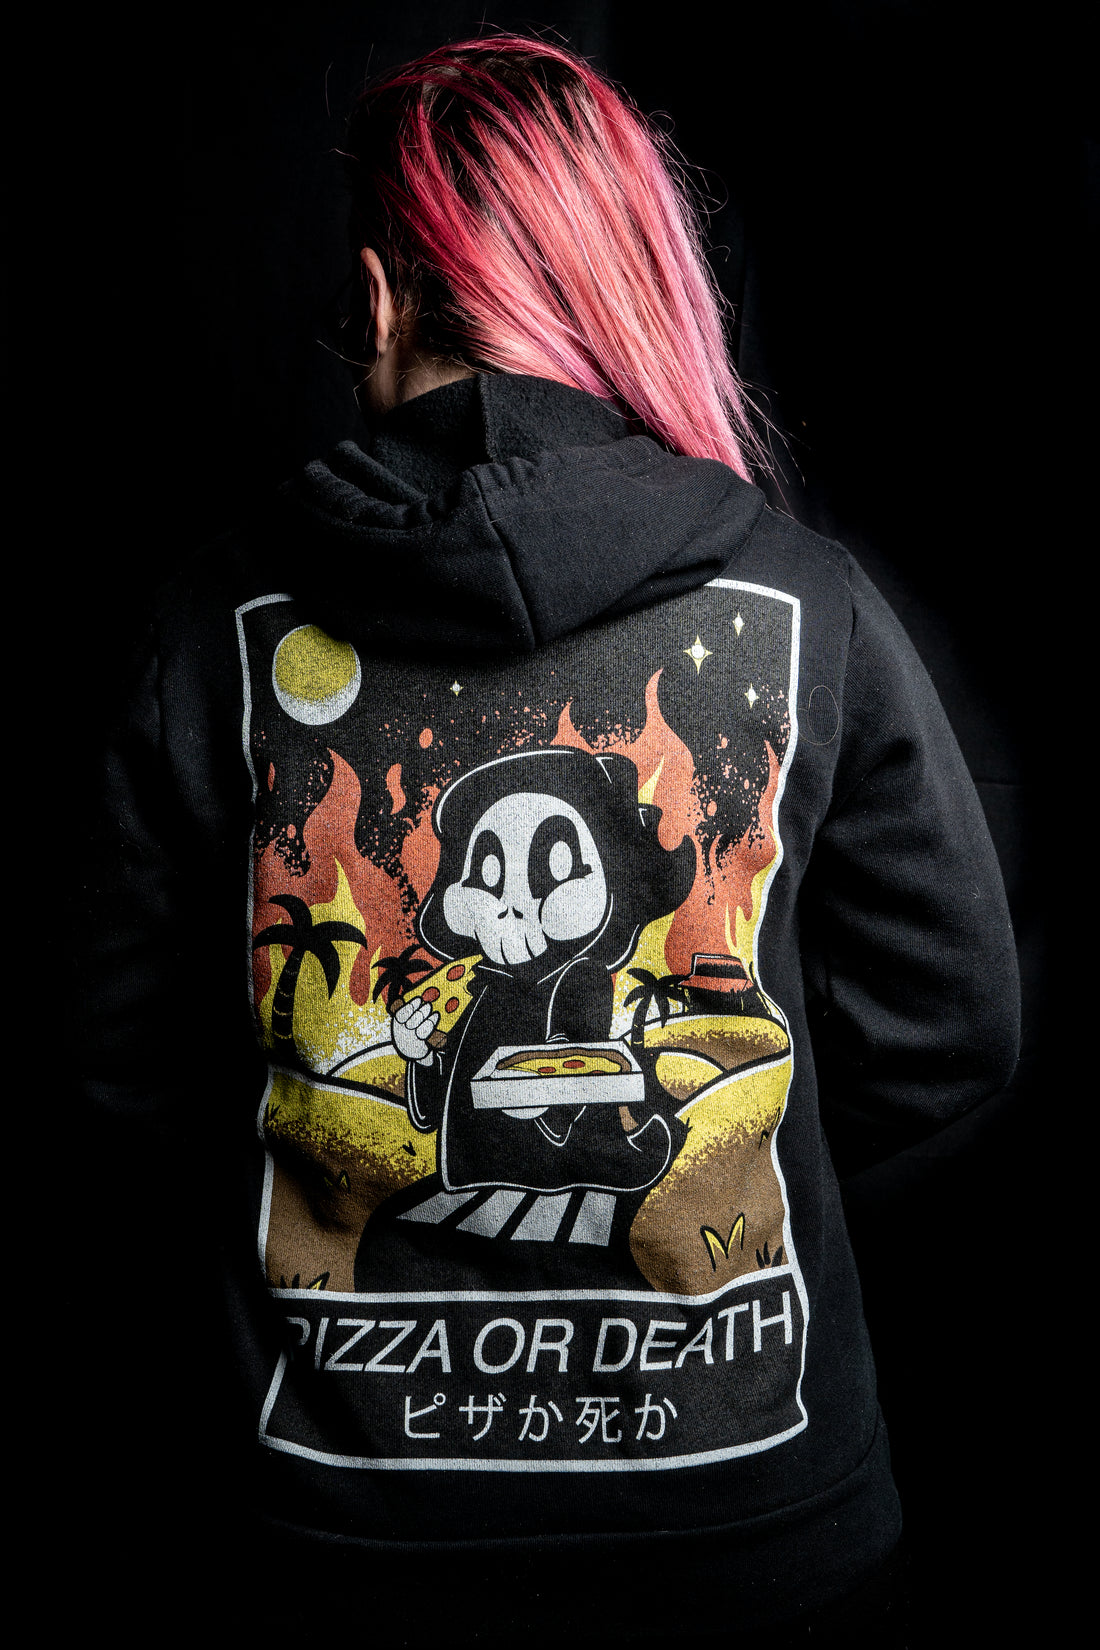 "Pizza or Death" Unisex Hooded Sweatshirt